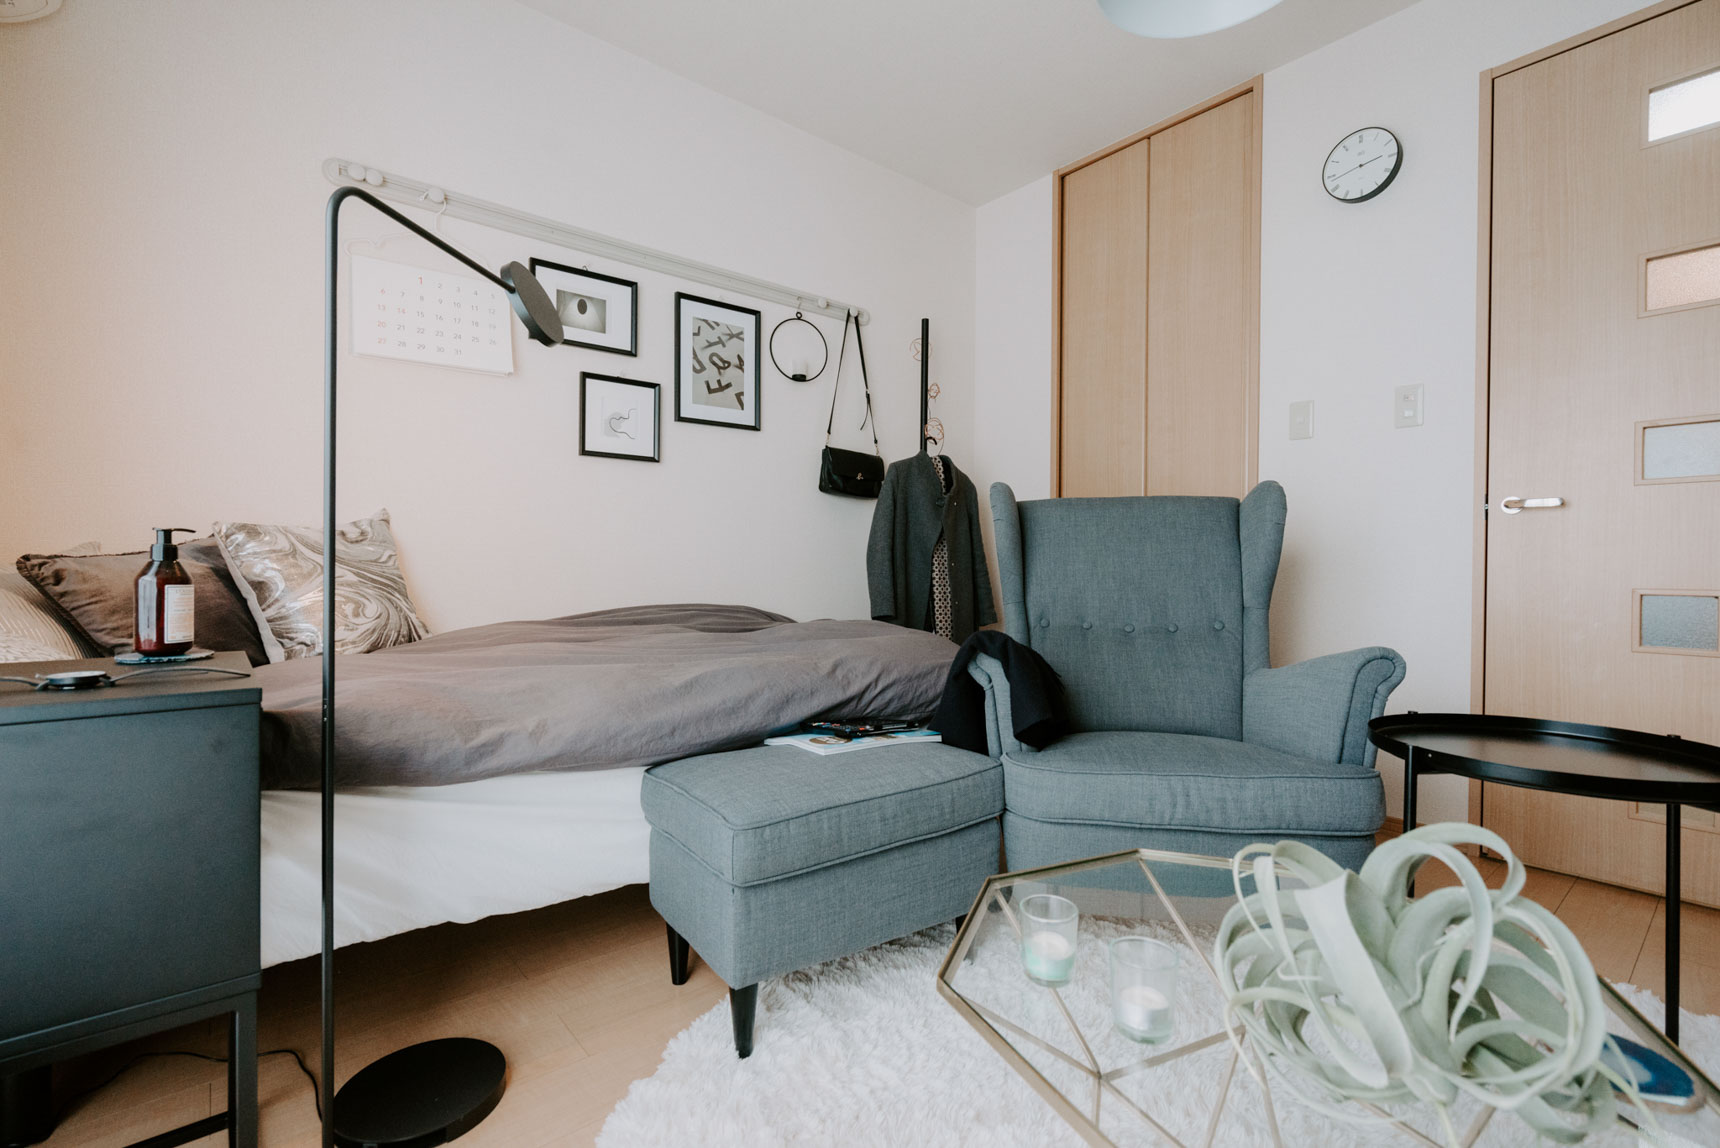 こちらもIKEAの一人掛けソファ「ストランドモン」を置かれている一人暮らしのお部屋。クラシックなデザインが特徴的ですね。同素材のオットマンも合わせて使用しています。